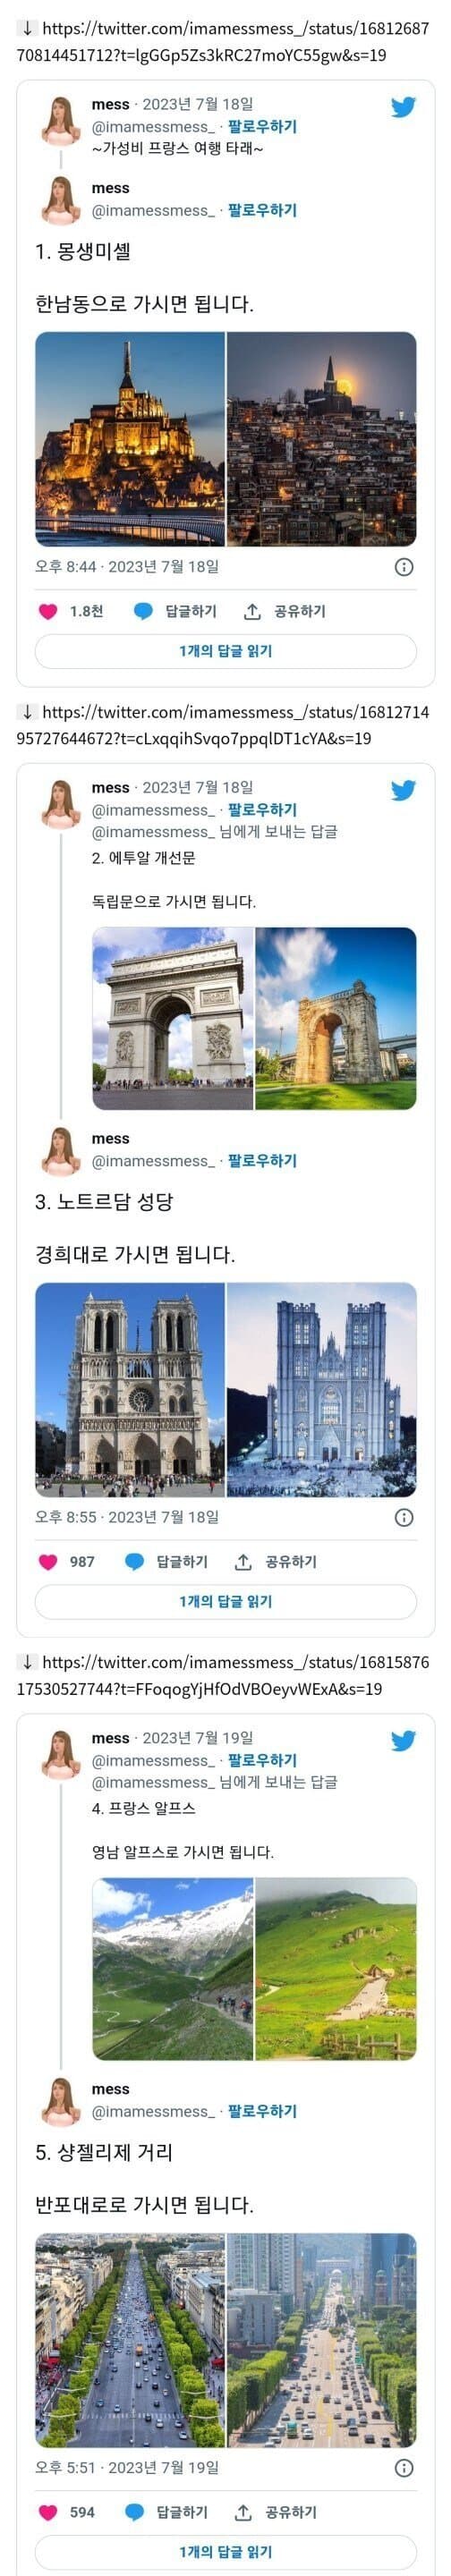 한국에서 가성비로 프랑스 여행하는 법